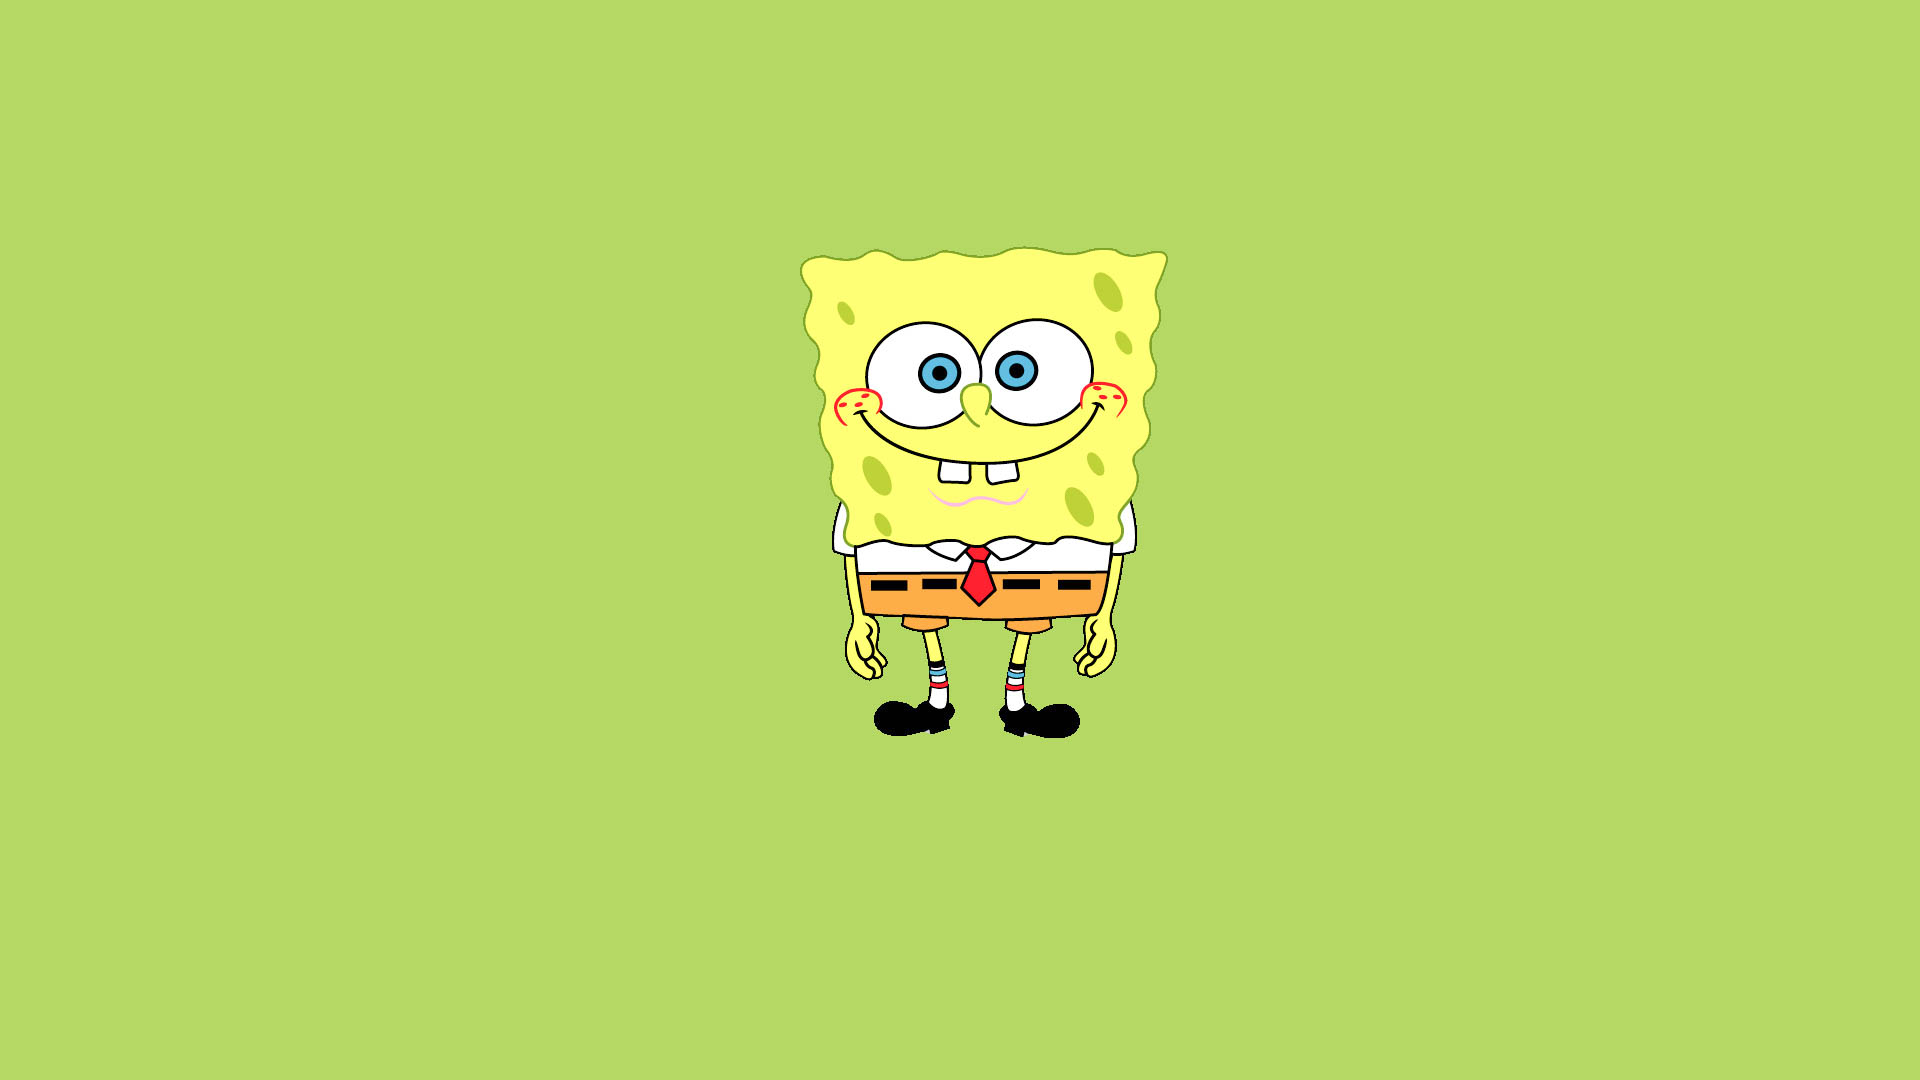 Spongebob Squarepants Beautiful HD Wallpaper In High